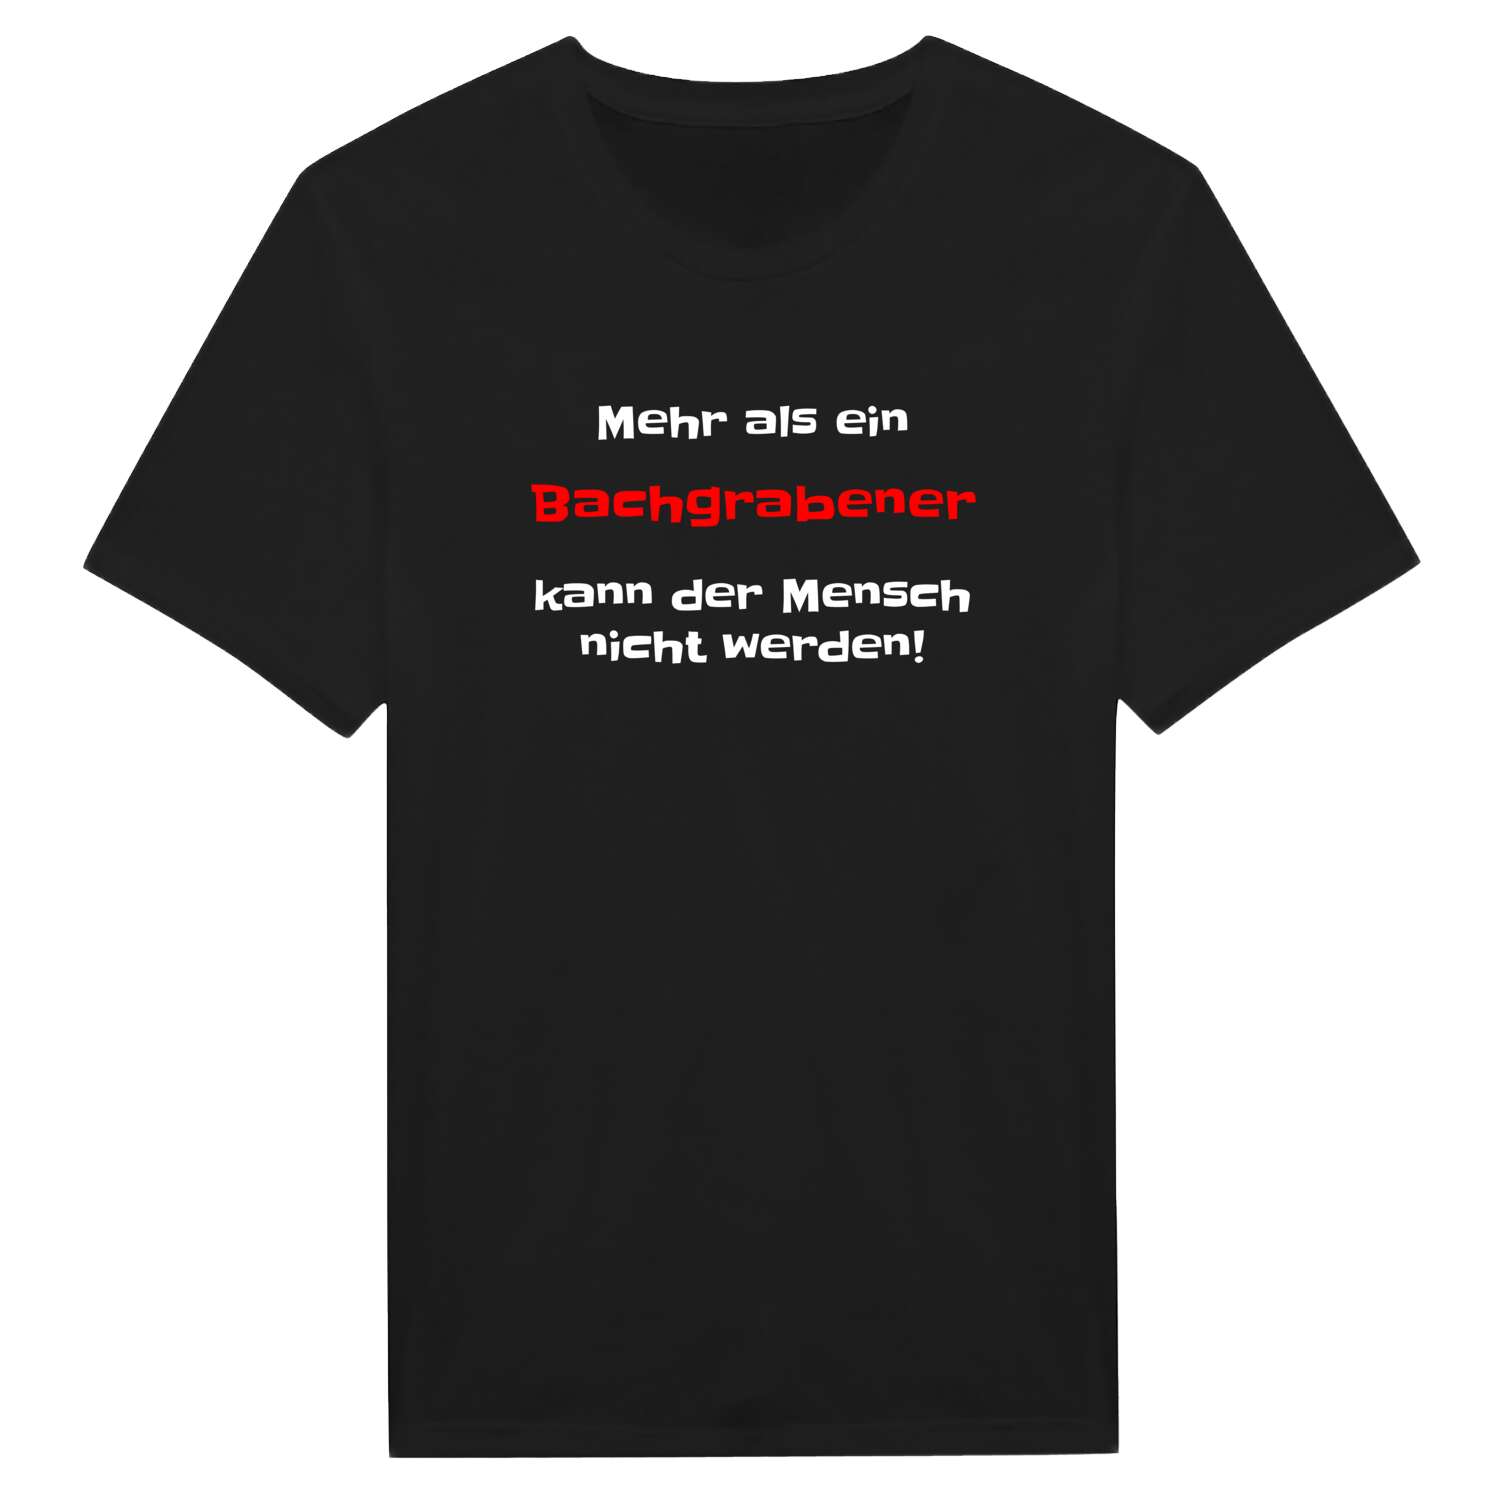 Bachgraben T-Shirt »Mehr als ein«